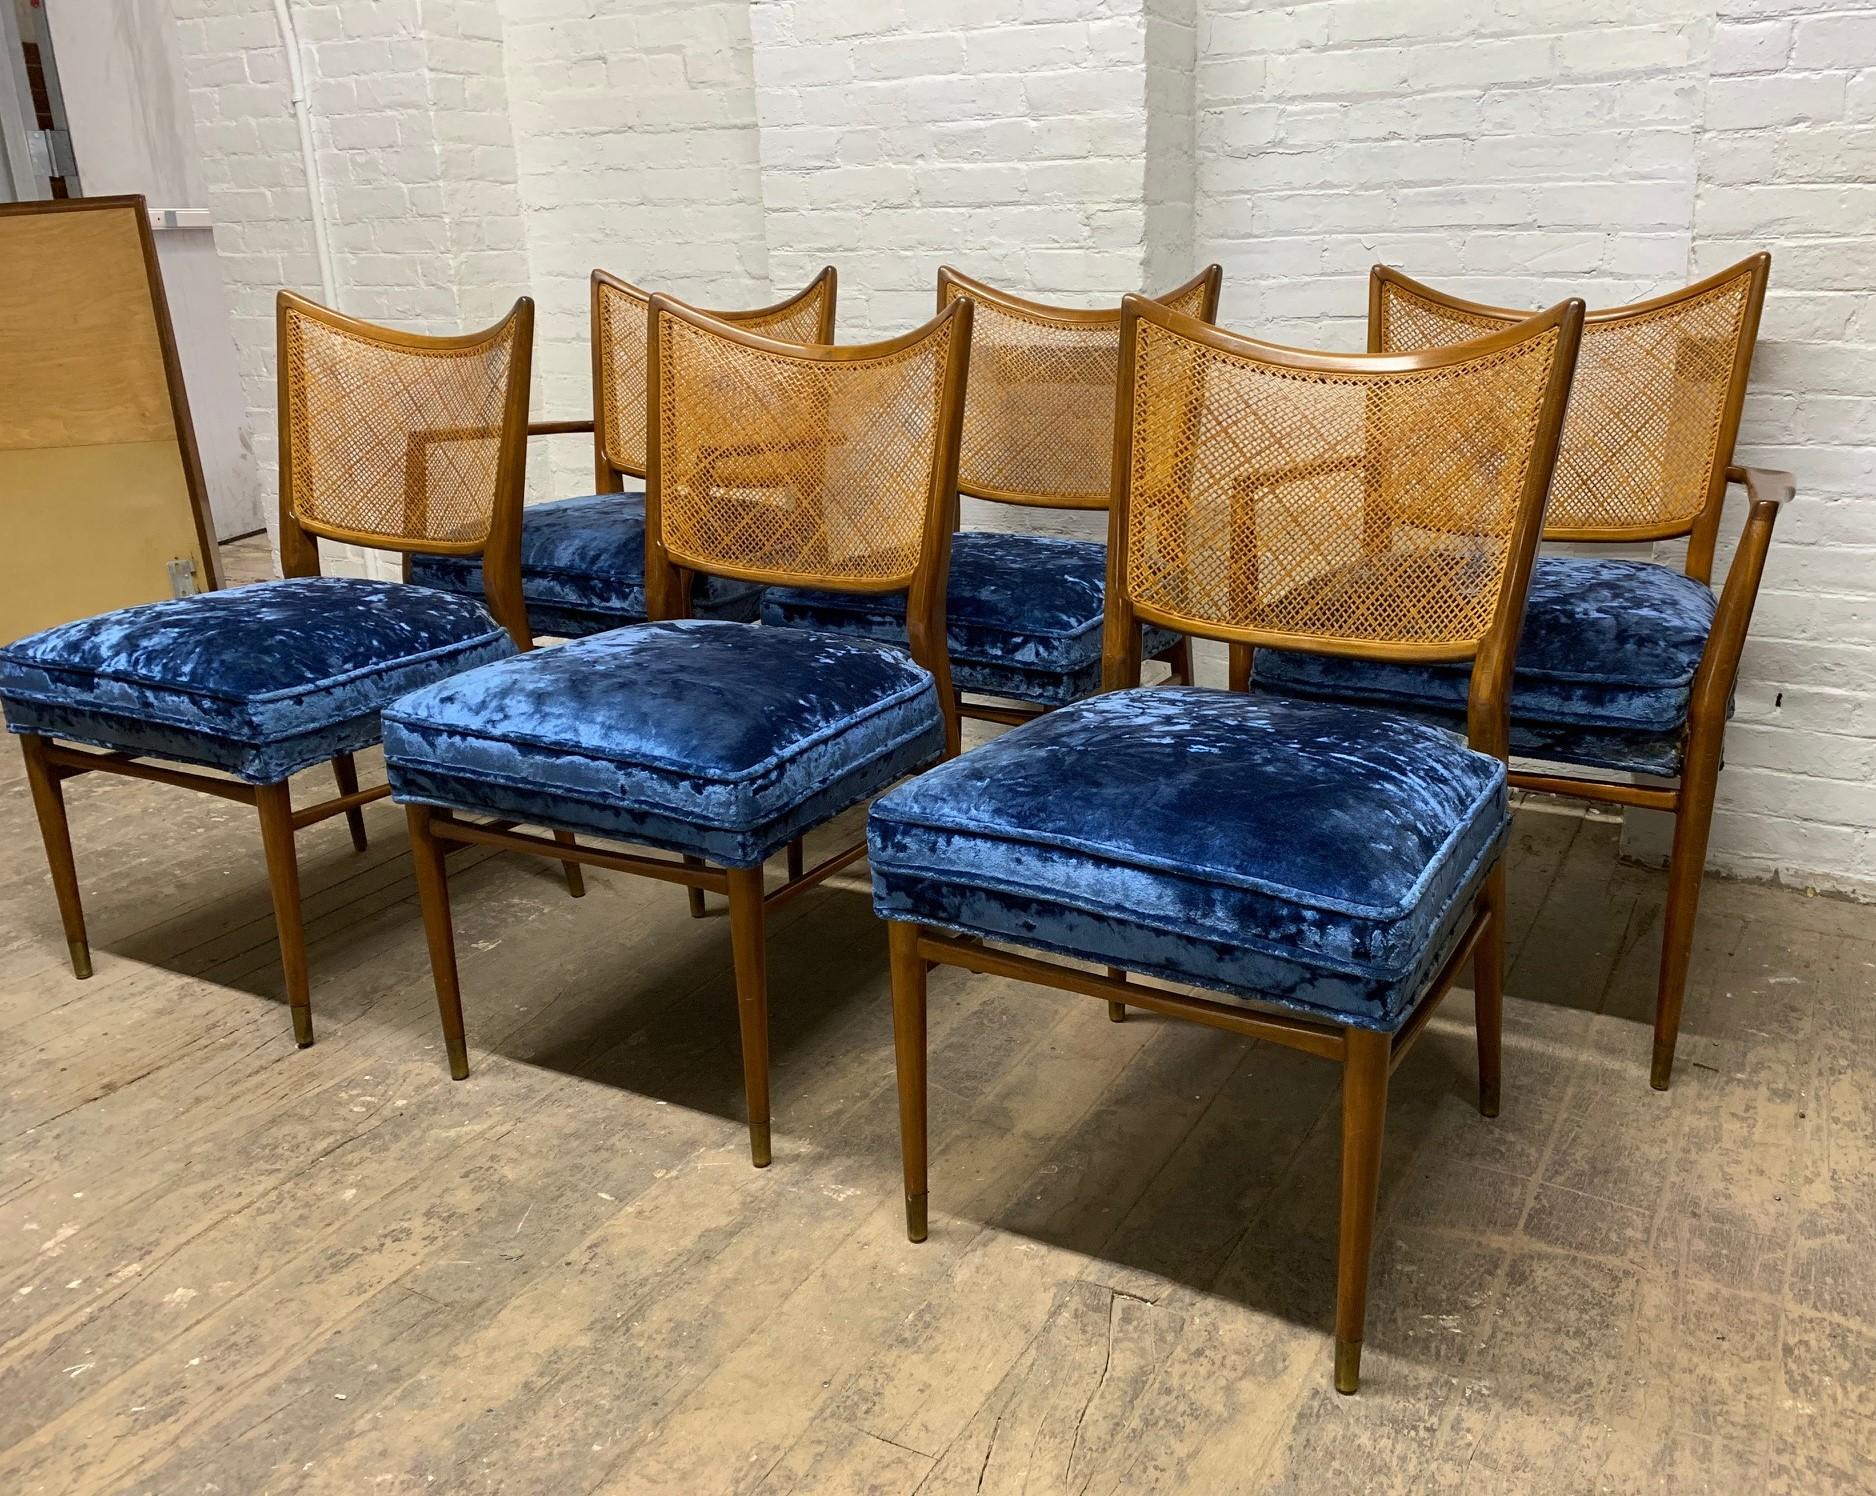 Ensemble de 6 chaises de salle à manger Erno Fabry en noyer et dossier en rotin. Les chaises sont en noyer avec des dossiers cannelés. Les sièges sont en velours bleu. Cet ensemble comprend deux fauteuils sculptés.  Table non incluse. 

Bras : 34H x